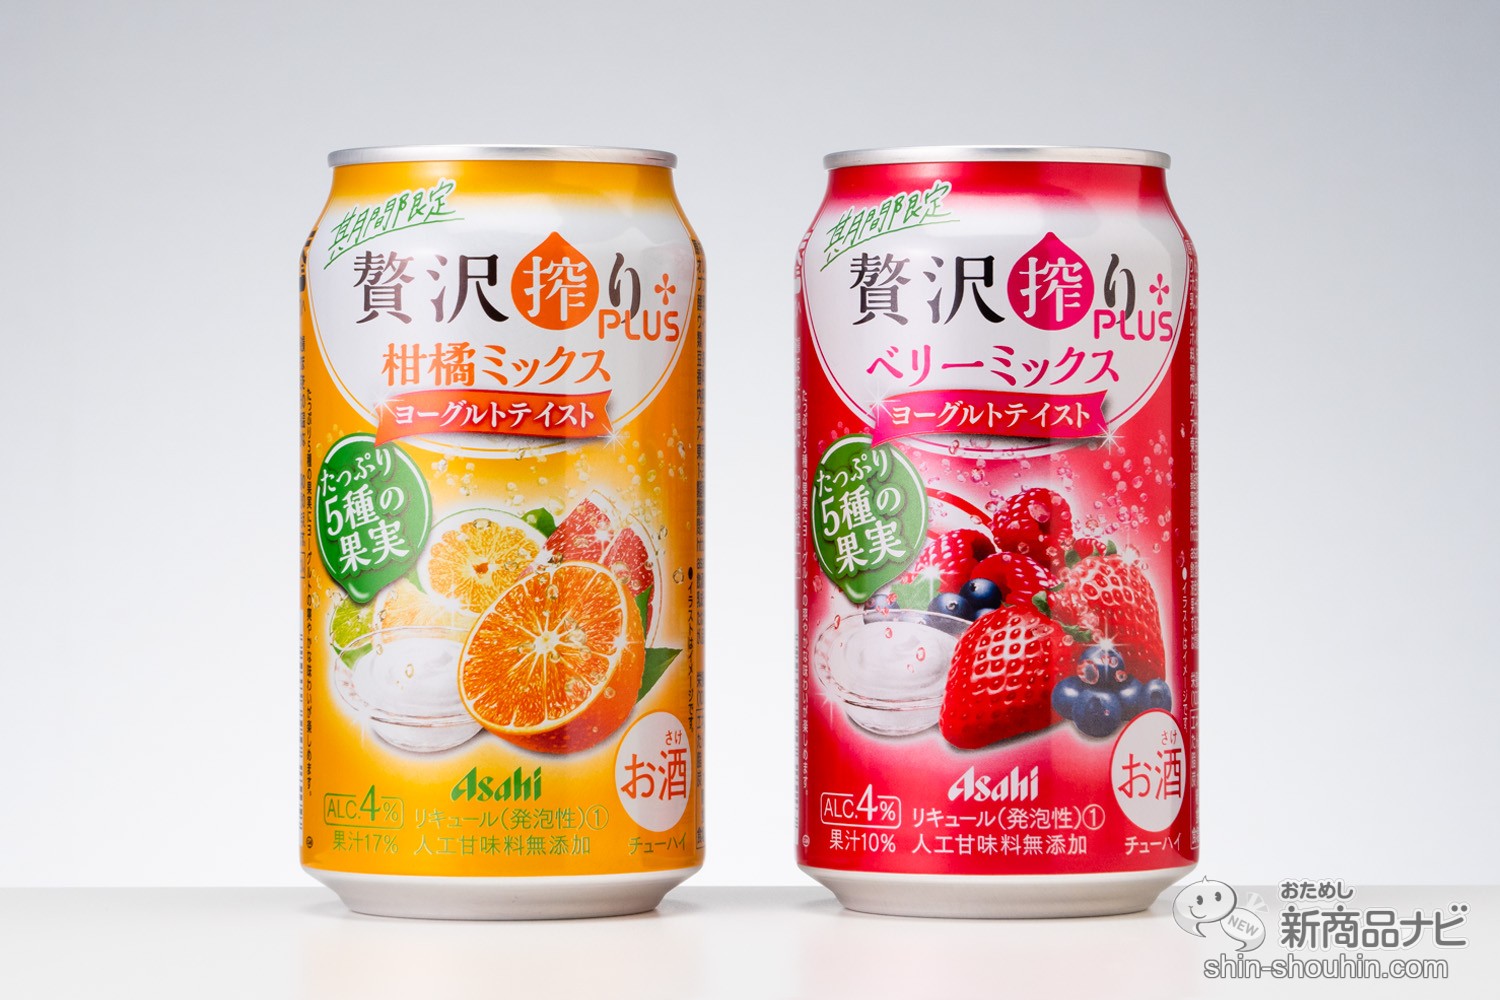 おためし新商品ナビ » Blog Archive » 【おすすめ】デザート系缶 